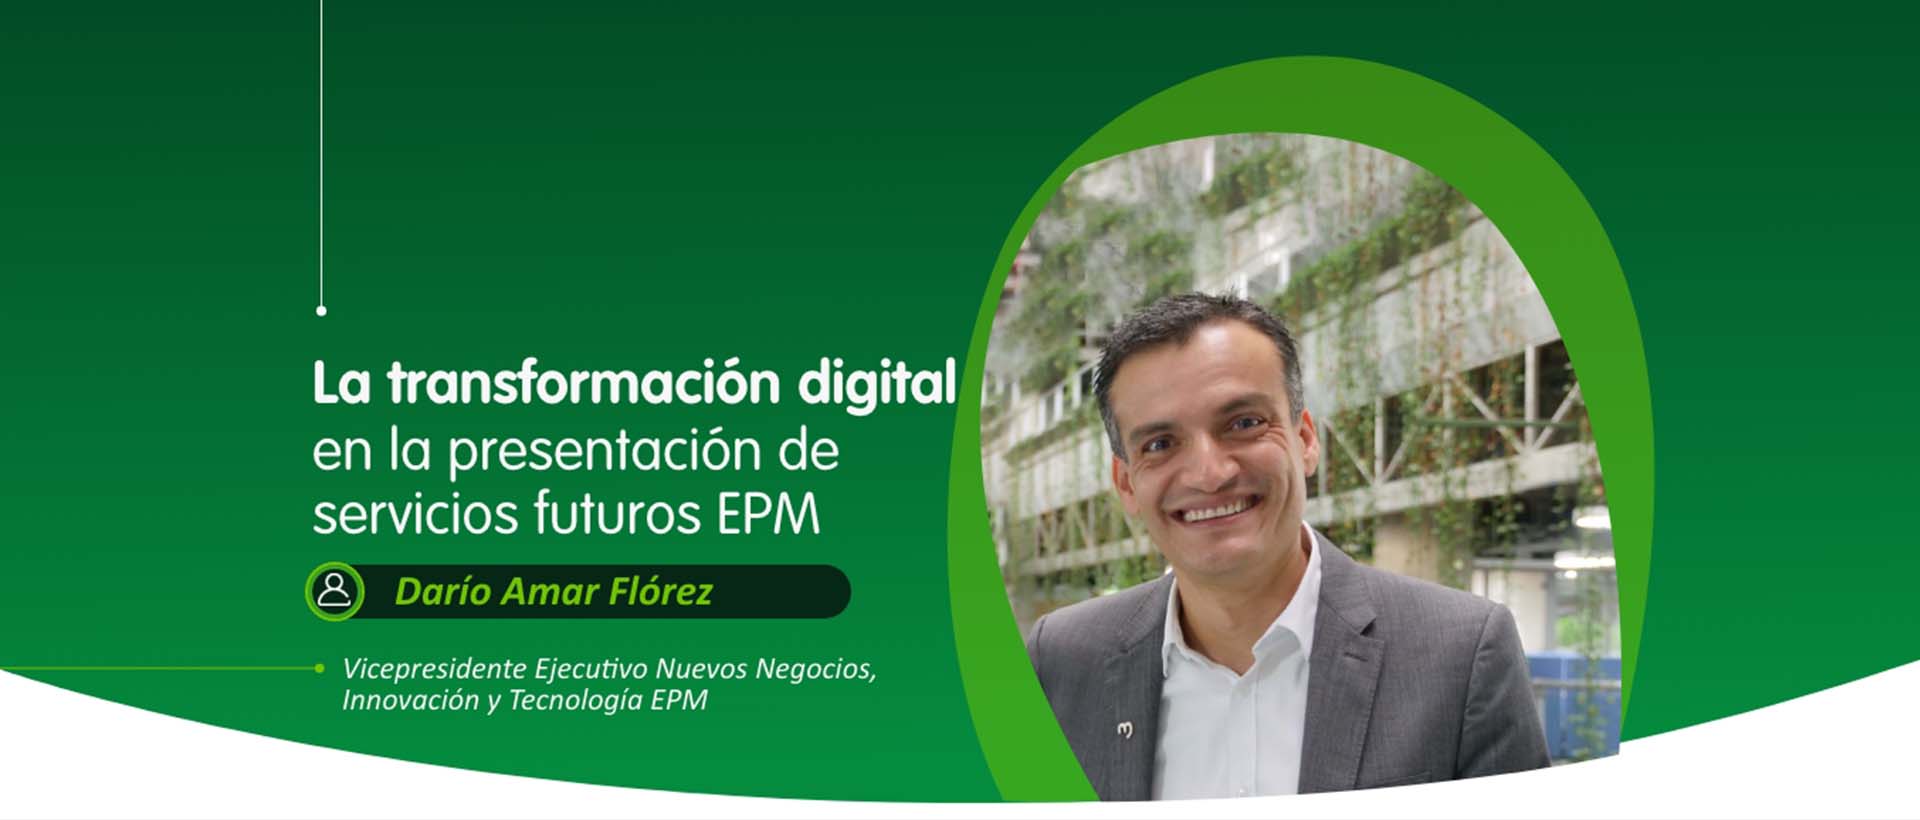 La transformación digital en la prestación de servicios futuros de EPM